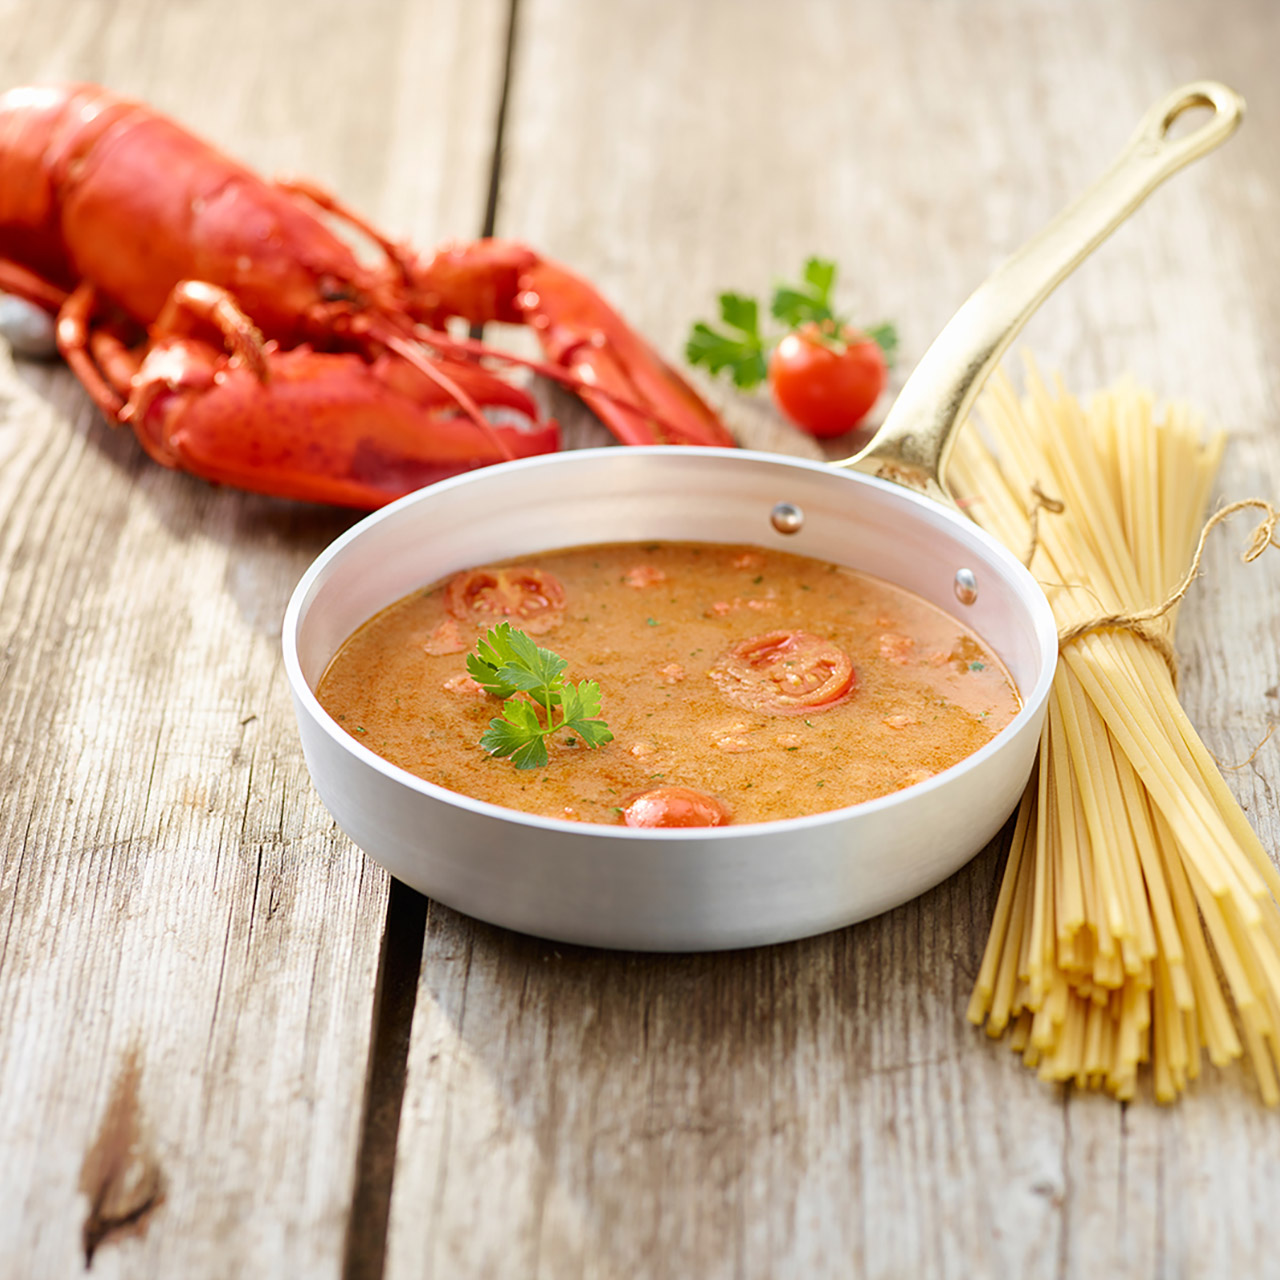 Tegamino contenente una zuppa di pesce targata Arbi, posizionata vicino a un fascio di spaghetti e davanti a un astice e a un pomodorino.